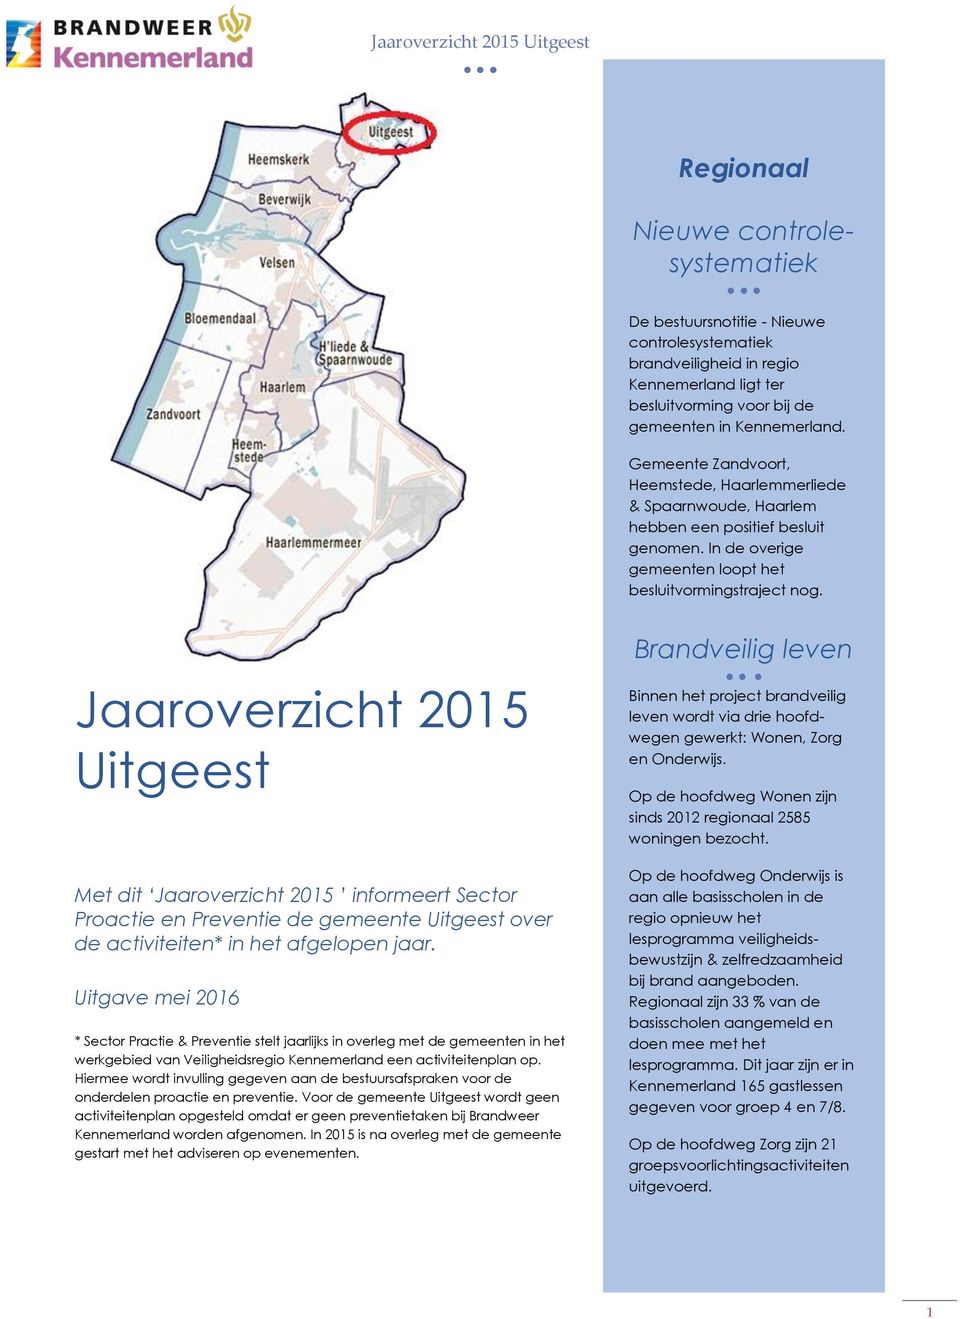 Jaaroverzicht 2015 Uitgeest Met dit Jaaroverzicht 2015 informeert Sector Proactie en Preventie de gemeente Uitgeest over de activiteiten* in het afgelopen jaar.